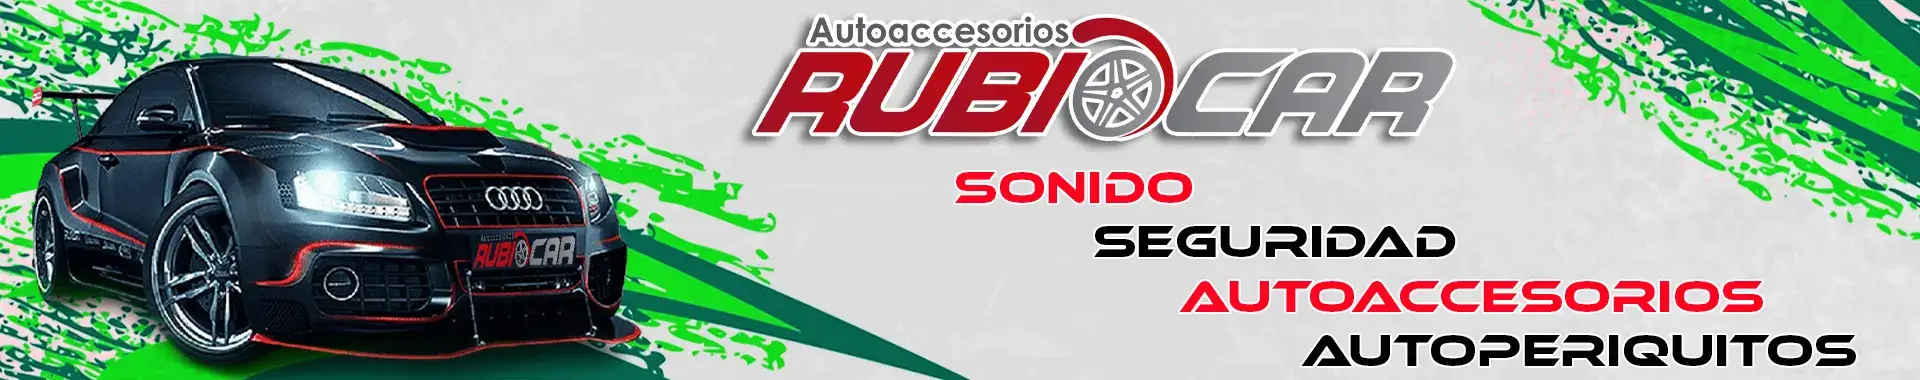 Imagen 2 del perfil de Rubiocar Autoaccesorios